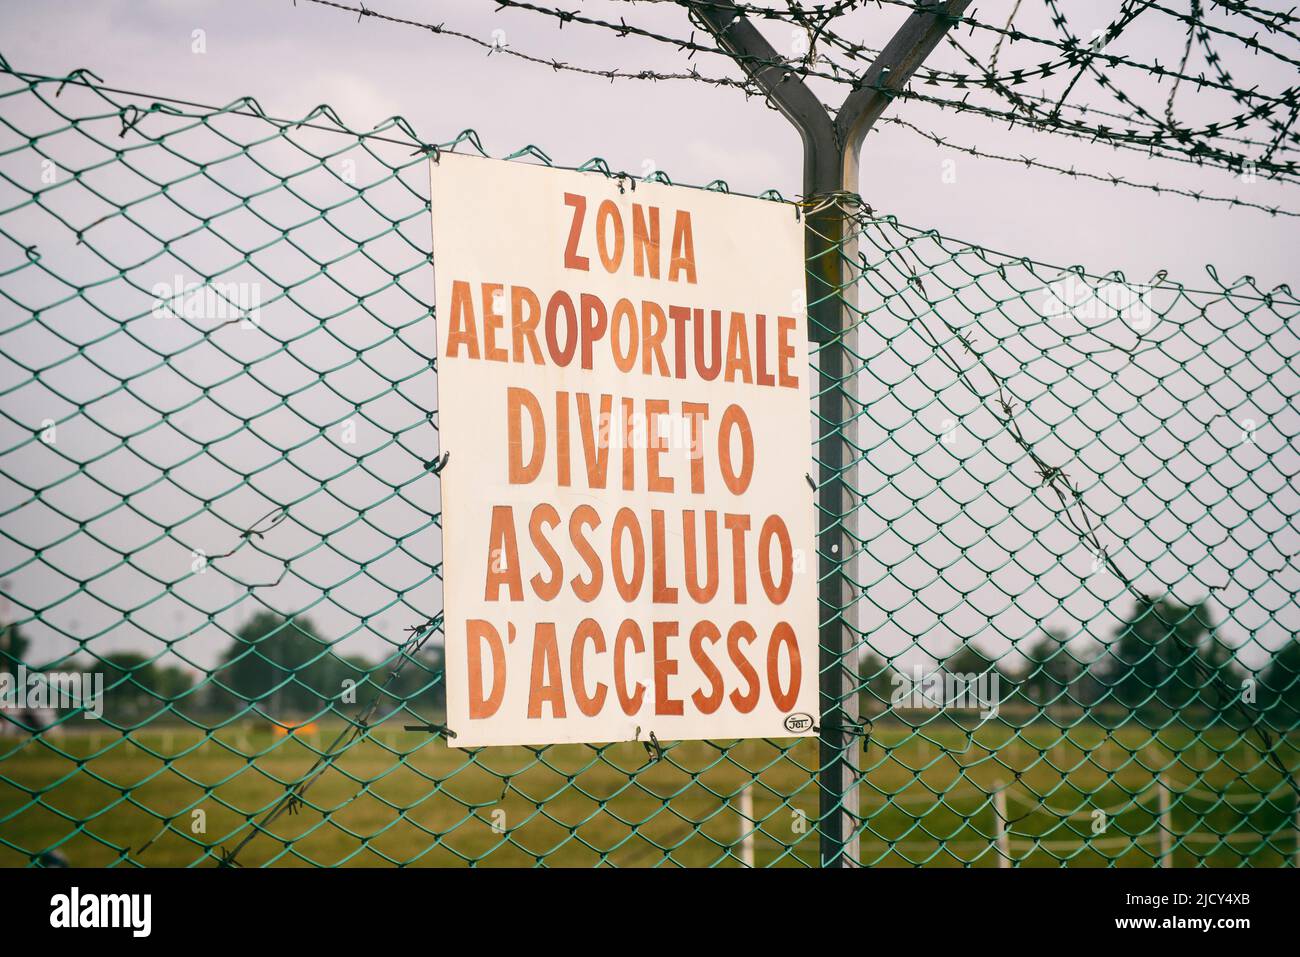 Zona aeroportuale divieto di accesso. Italian Airport  Stock Photo